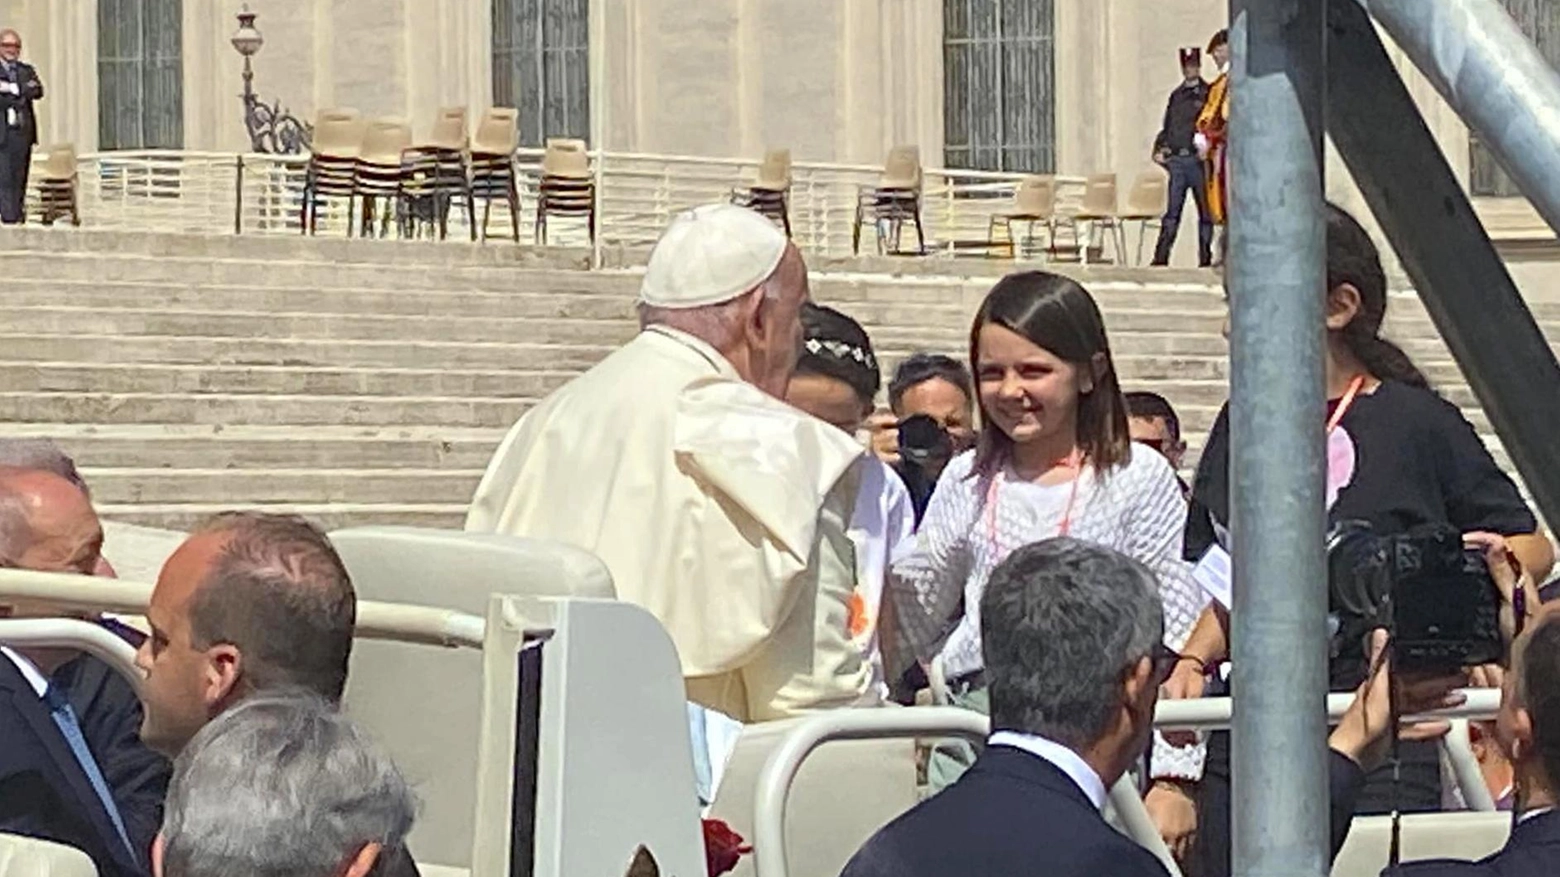 Durante l'udienza generale, 21 alunni della Scuola San Martino sono stati accolti sulla papamobile da Papa Francesco, che li ha abbracciati e donato loro una caramella. Un momento straordinario di gioia e emozione.